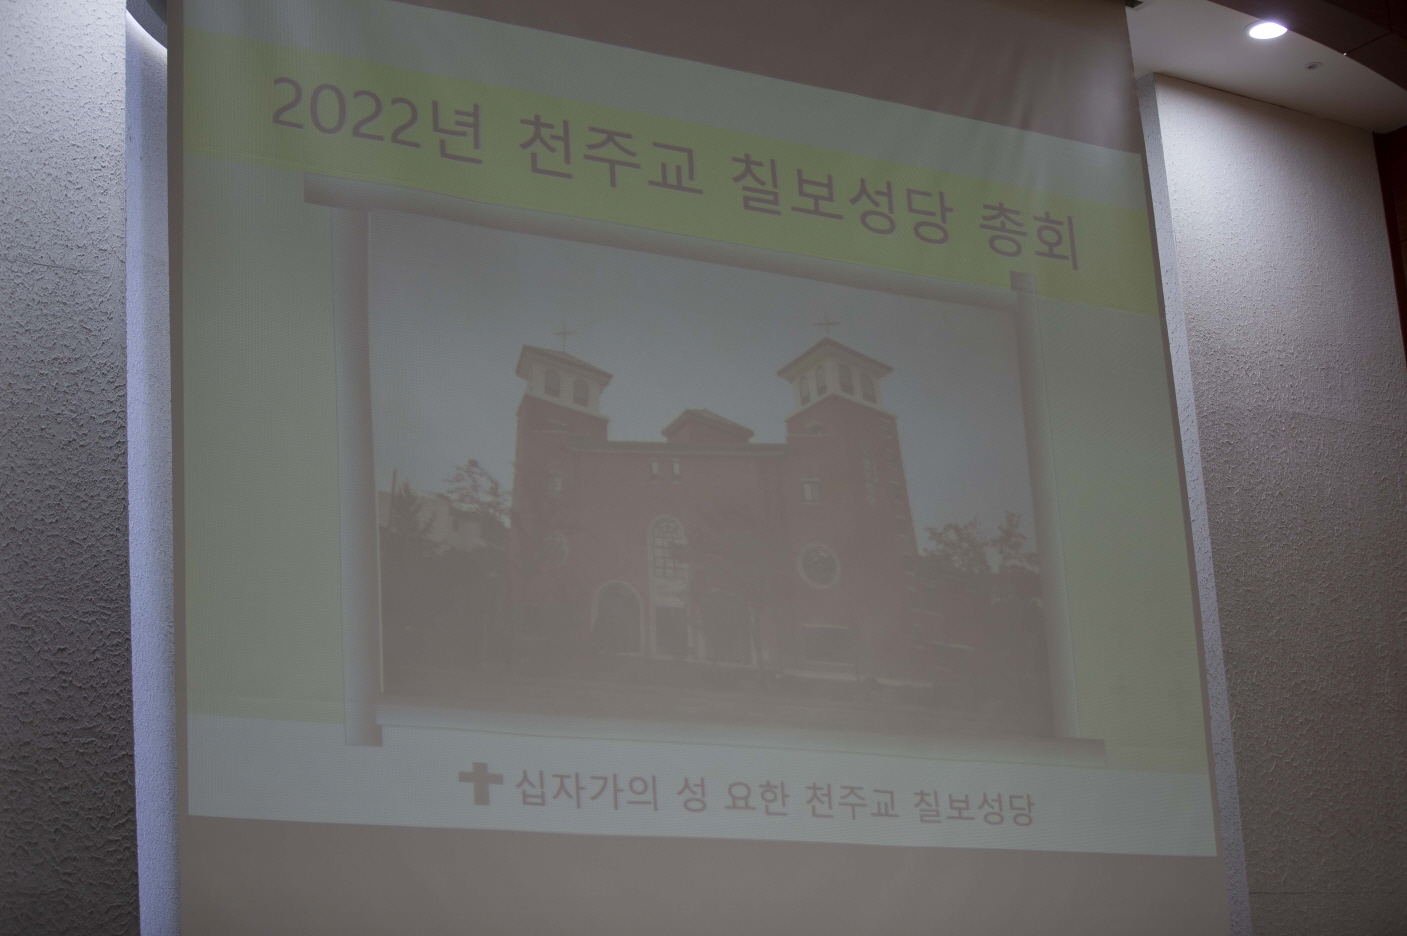 IMG_3308-3.jpg : 본당 총회 개최(2022. 2. 27.)